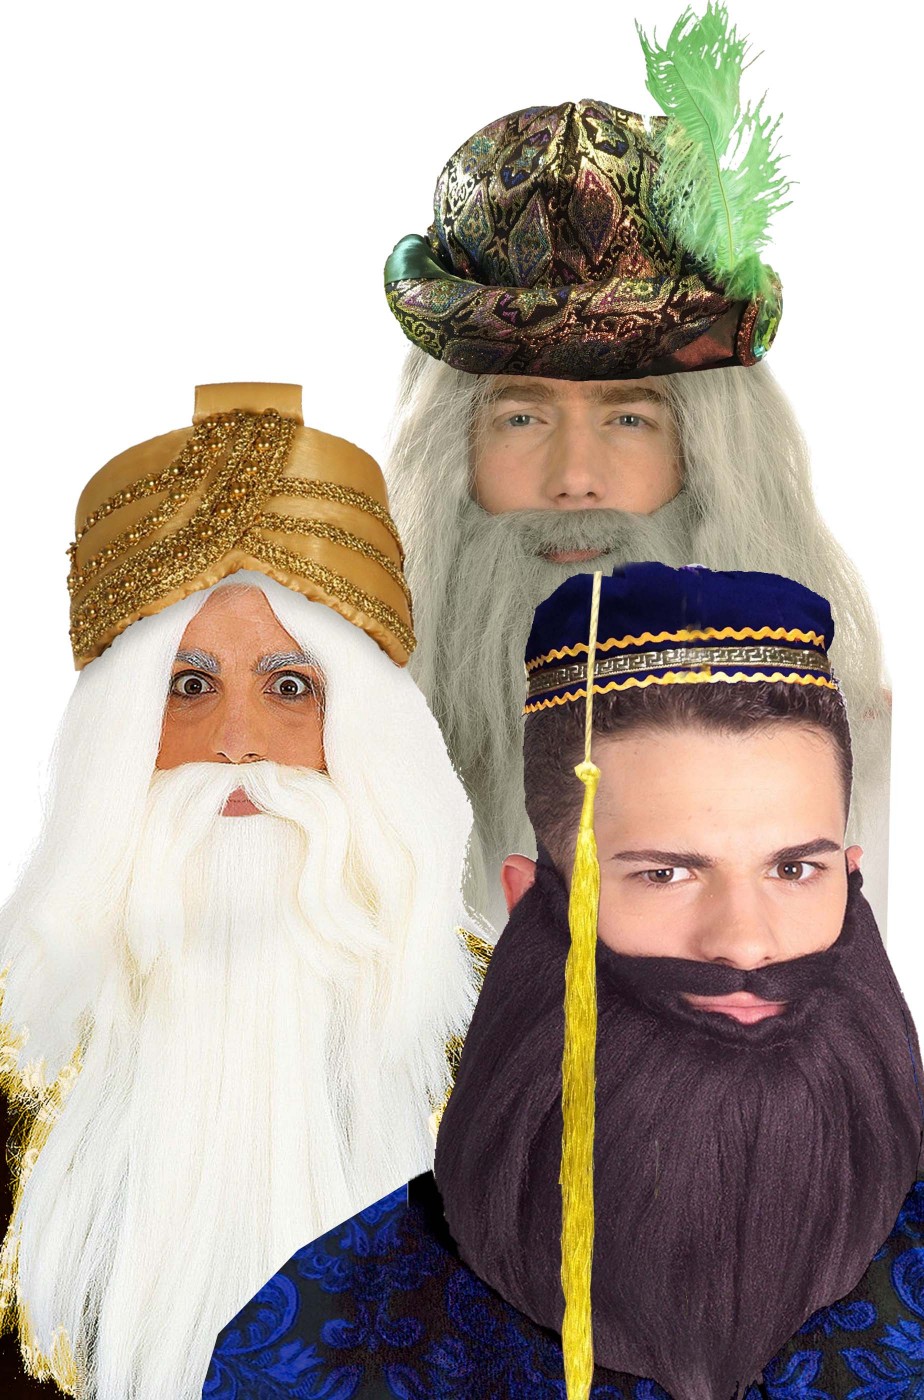 Cappelli turbanti dei tre re magi Gaspare, Melchiorre e Baldassarre